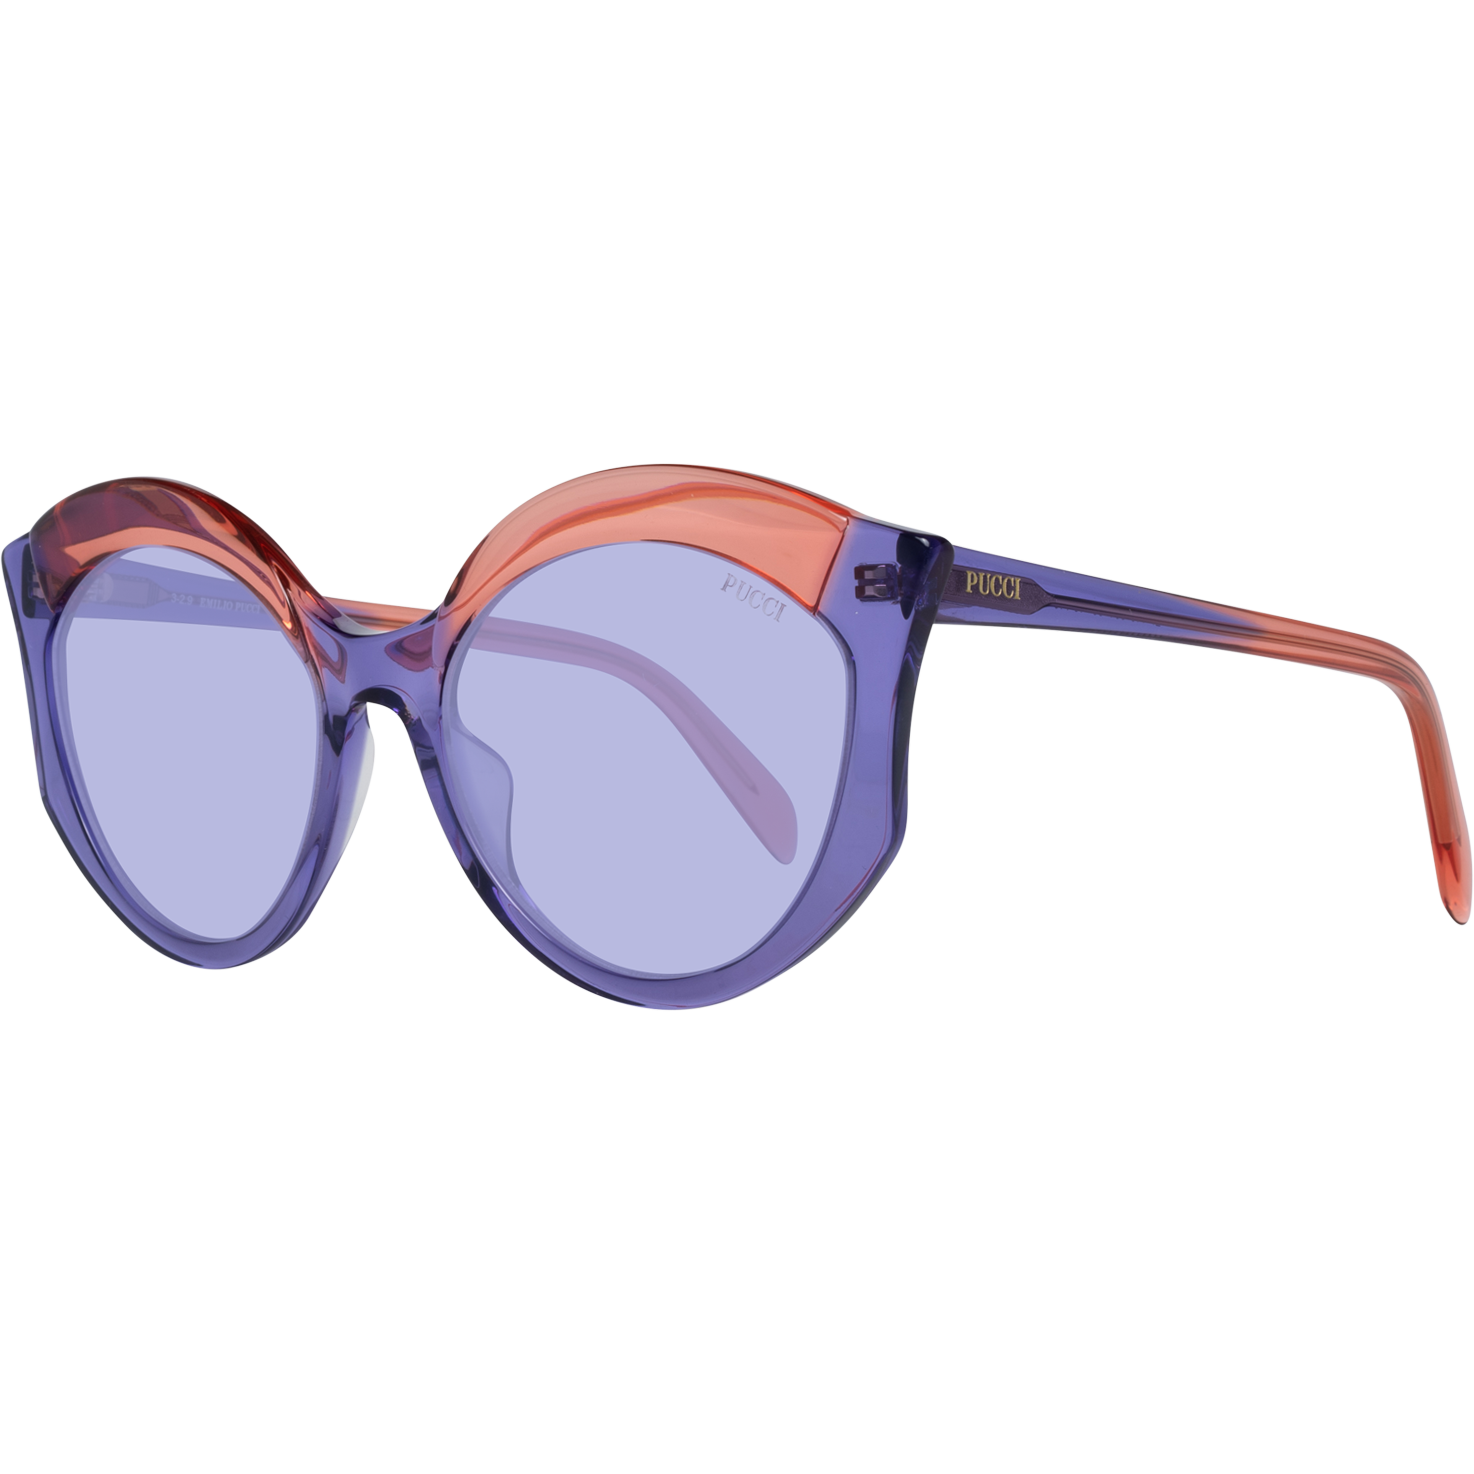 Emilio Pucci, Purple Women Sunglasses